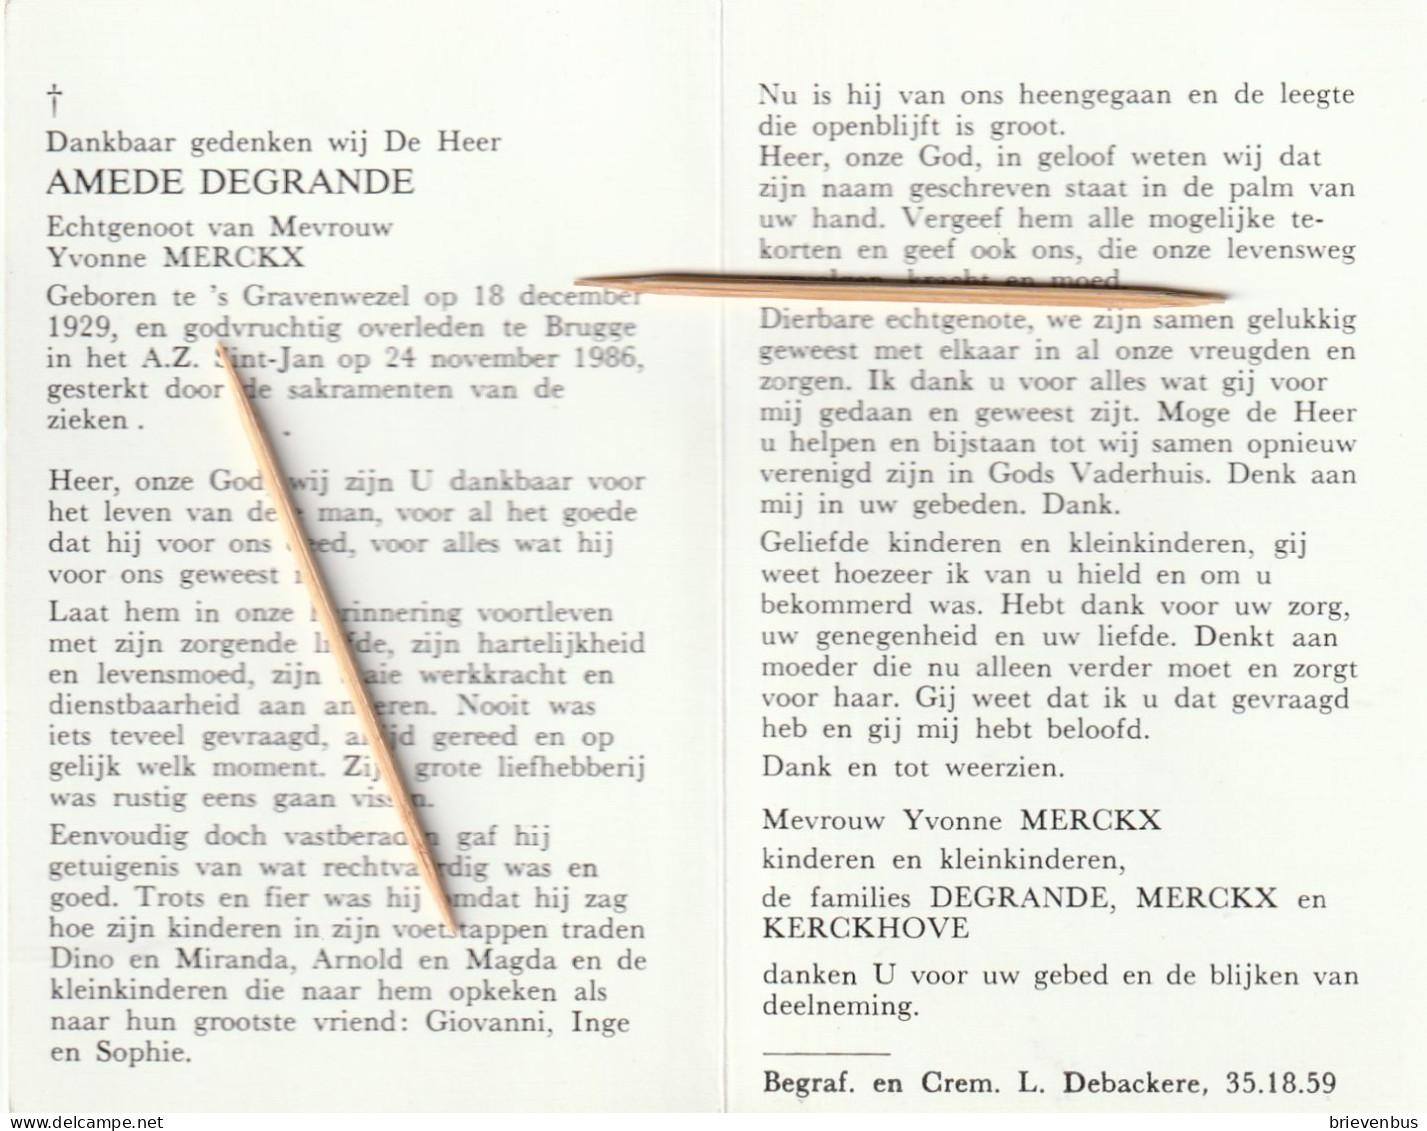 's Gravenwezel, Brugge, Amede Degrande, Merckx - Devotion Images